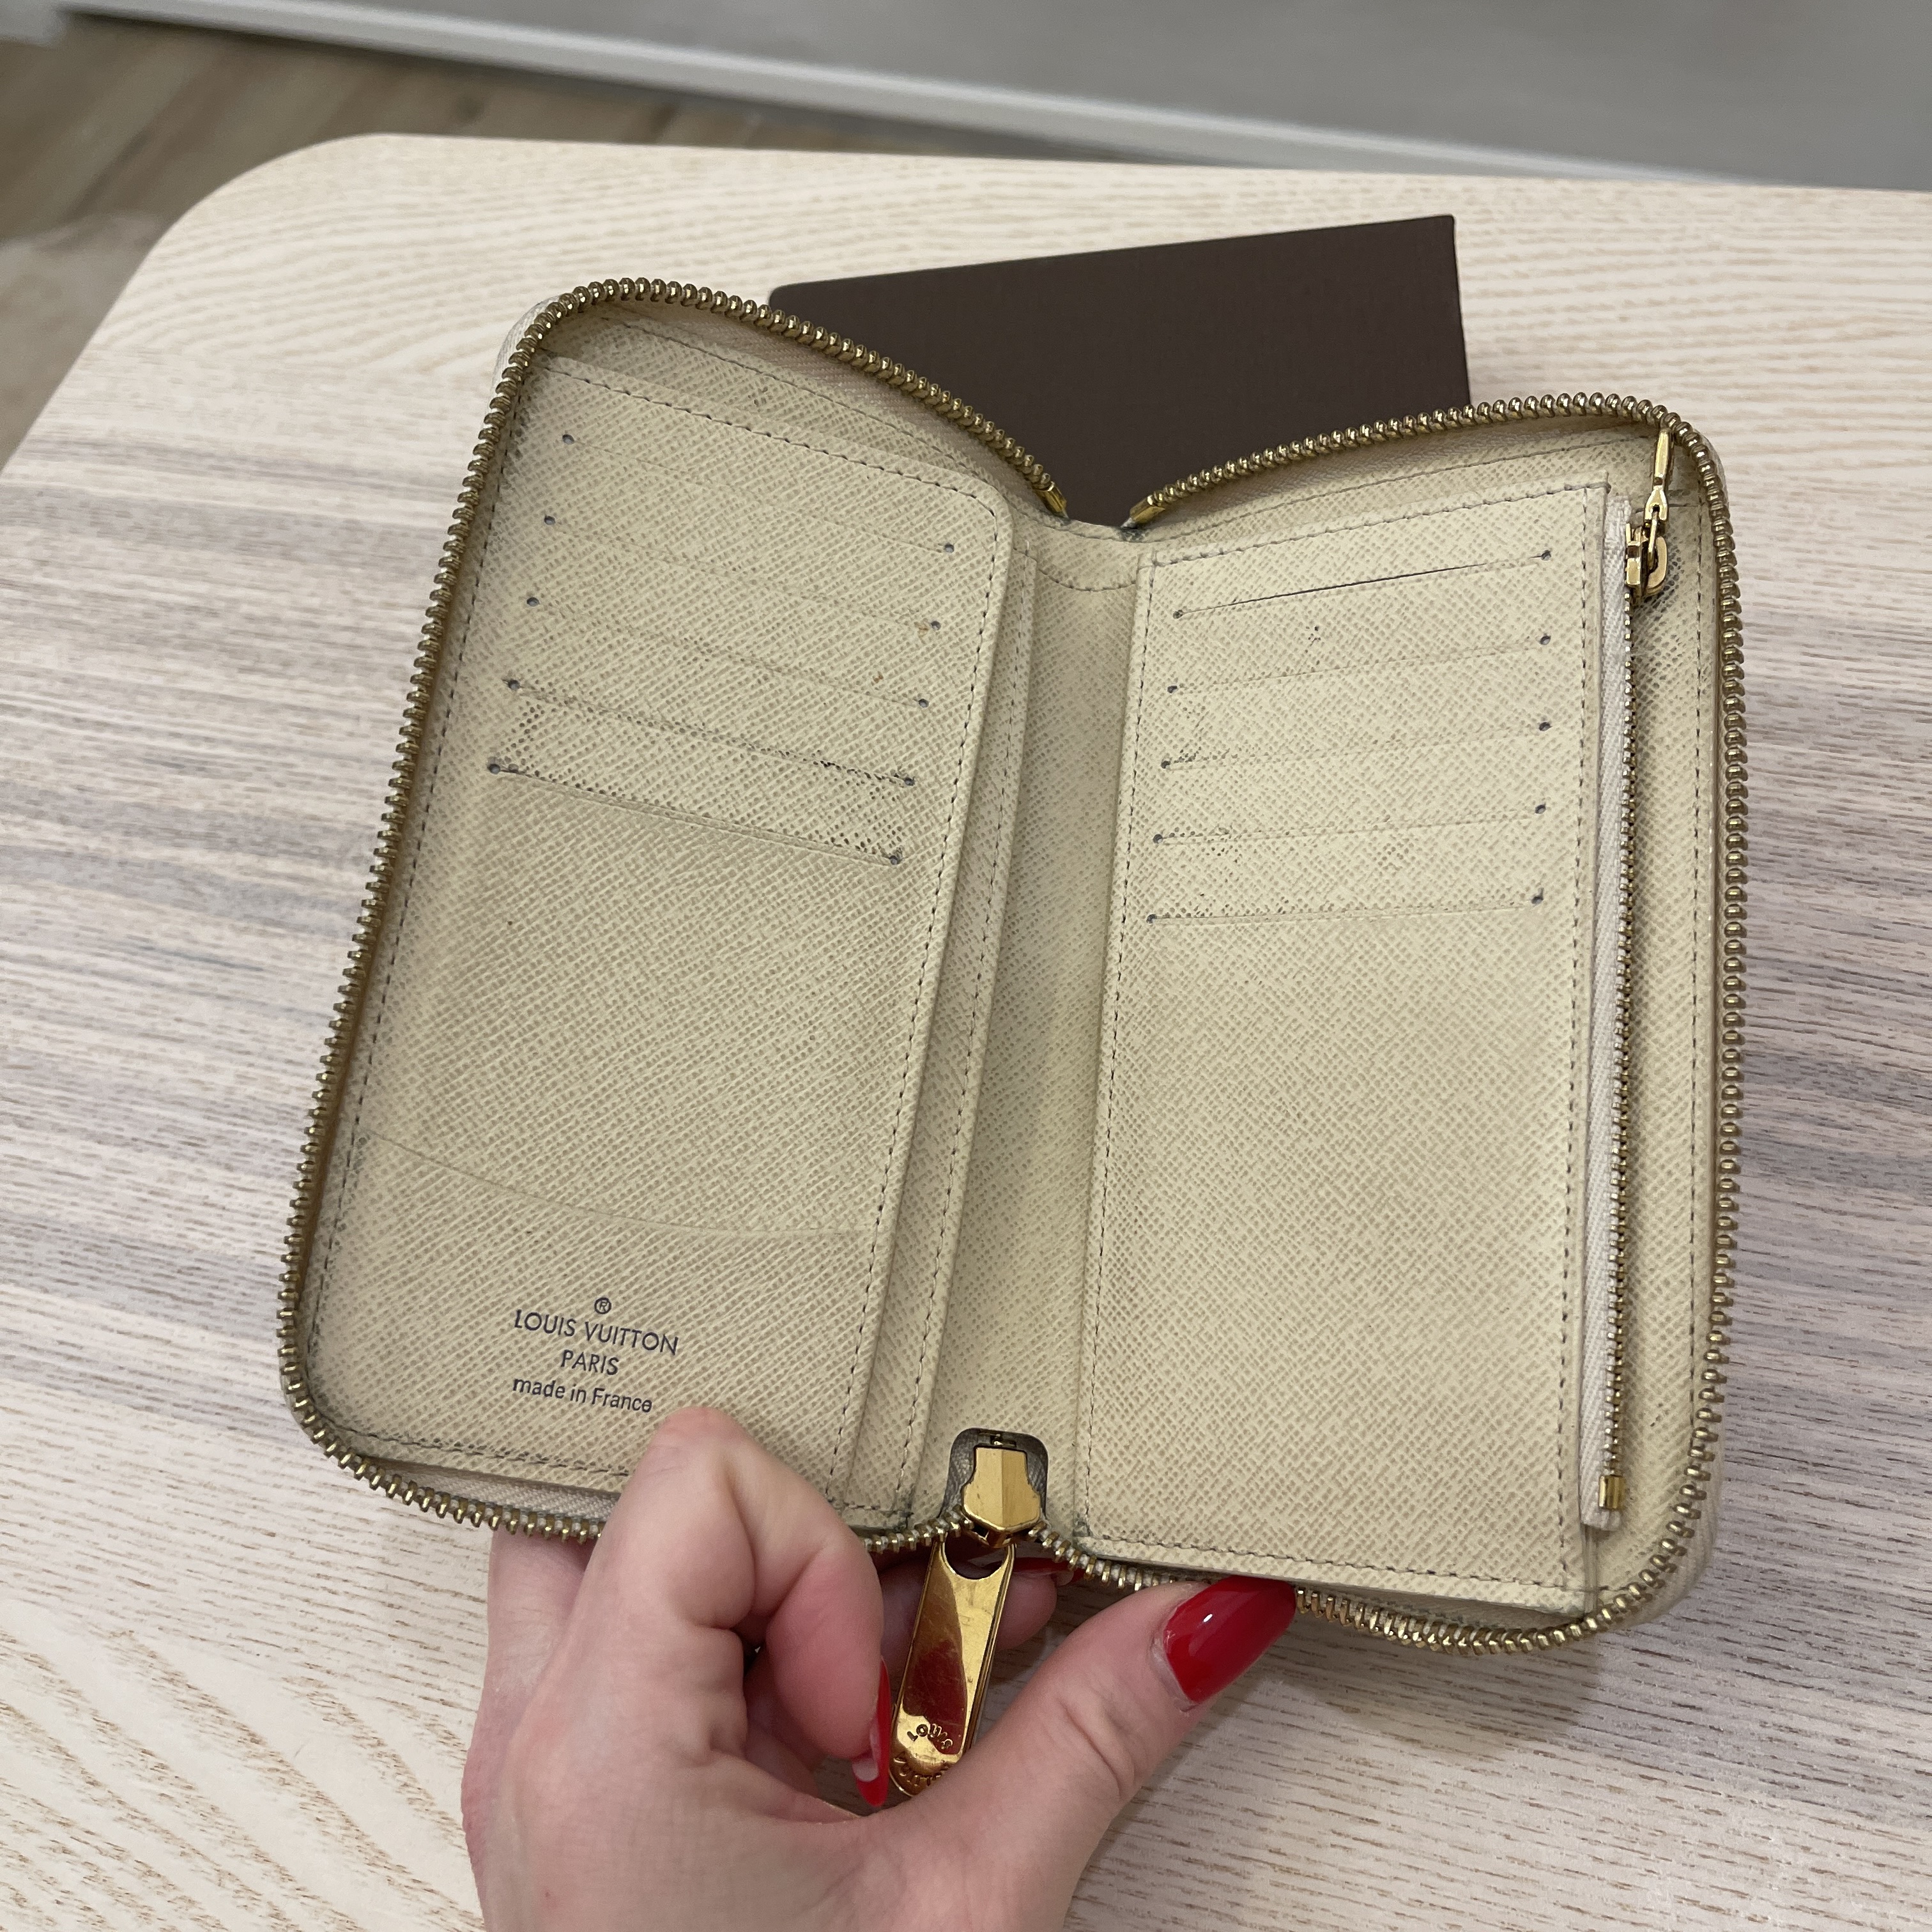 Louis Vuitton Damier Azur Zippy Compact Wallet